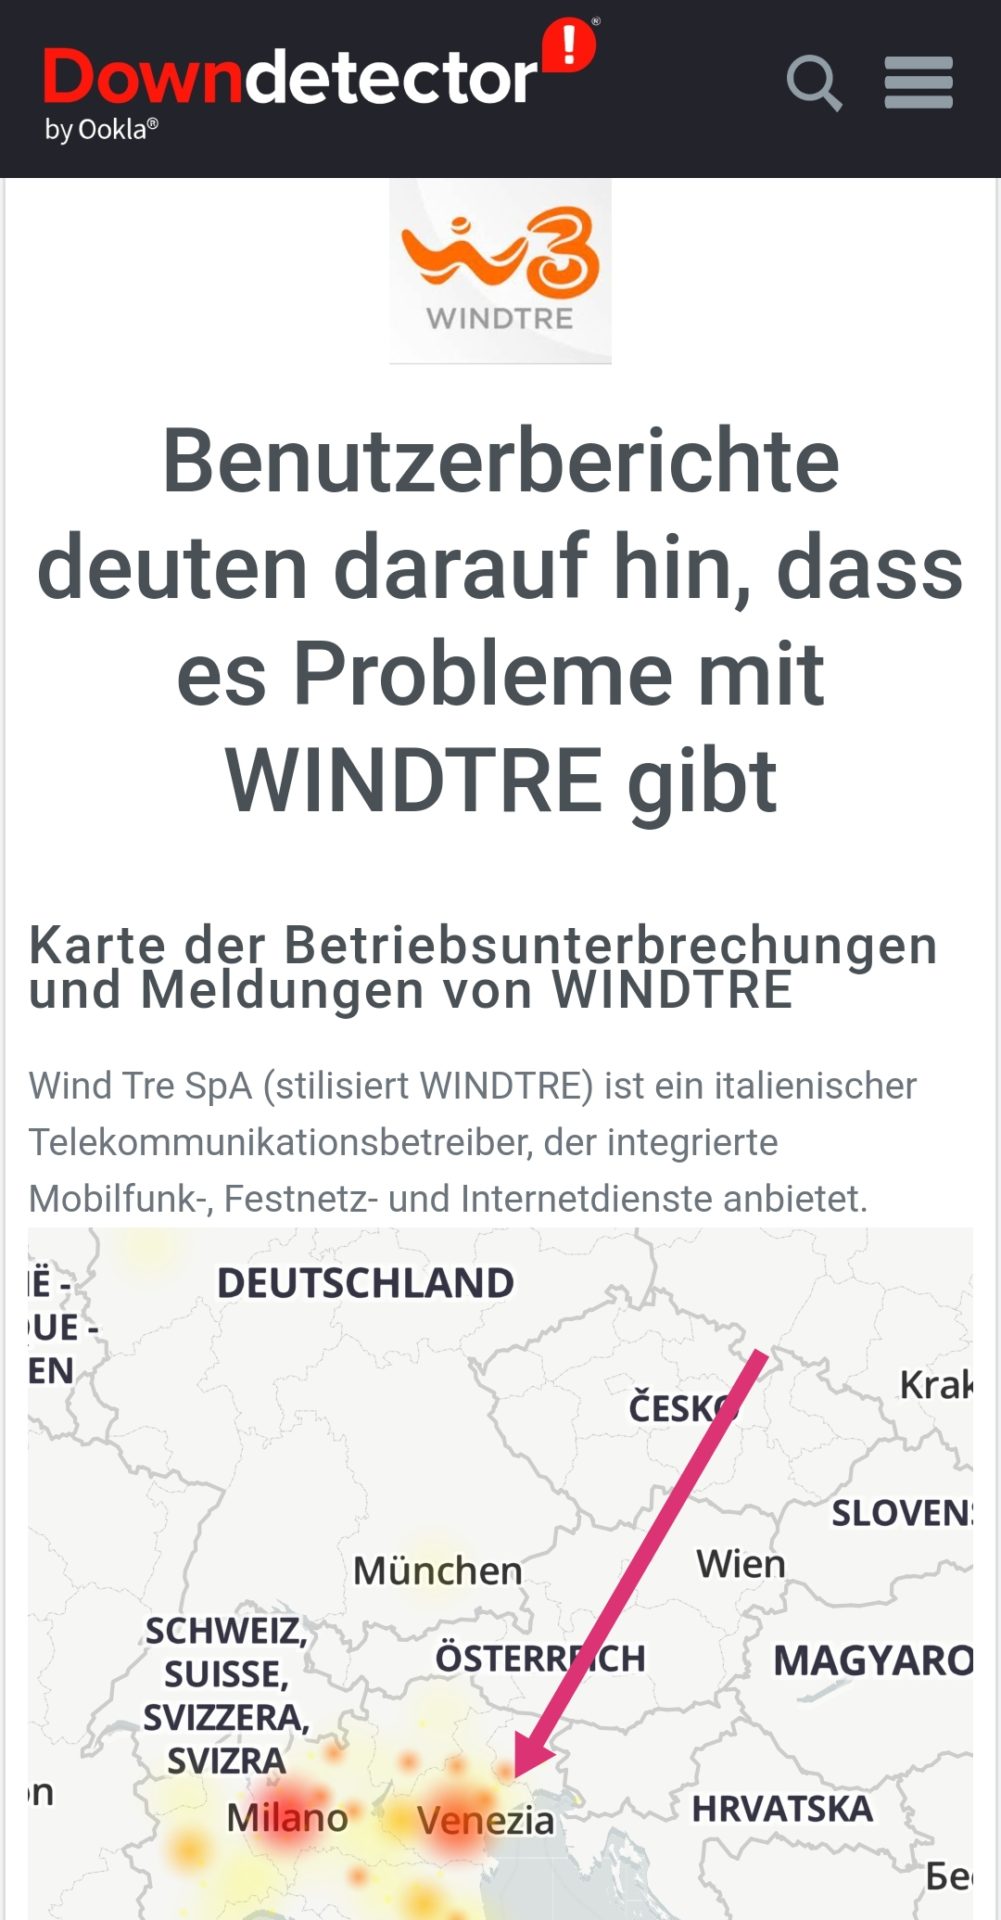 Mobilfunkanbieter WindTre aktuell mit großen Netzproblemen